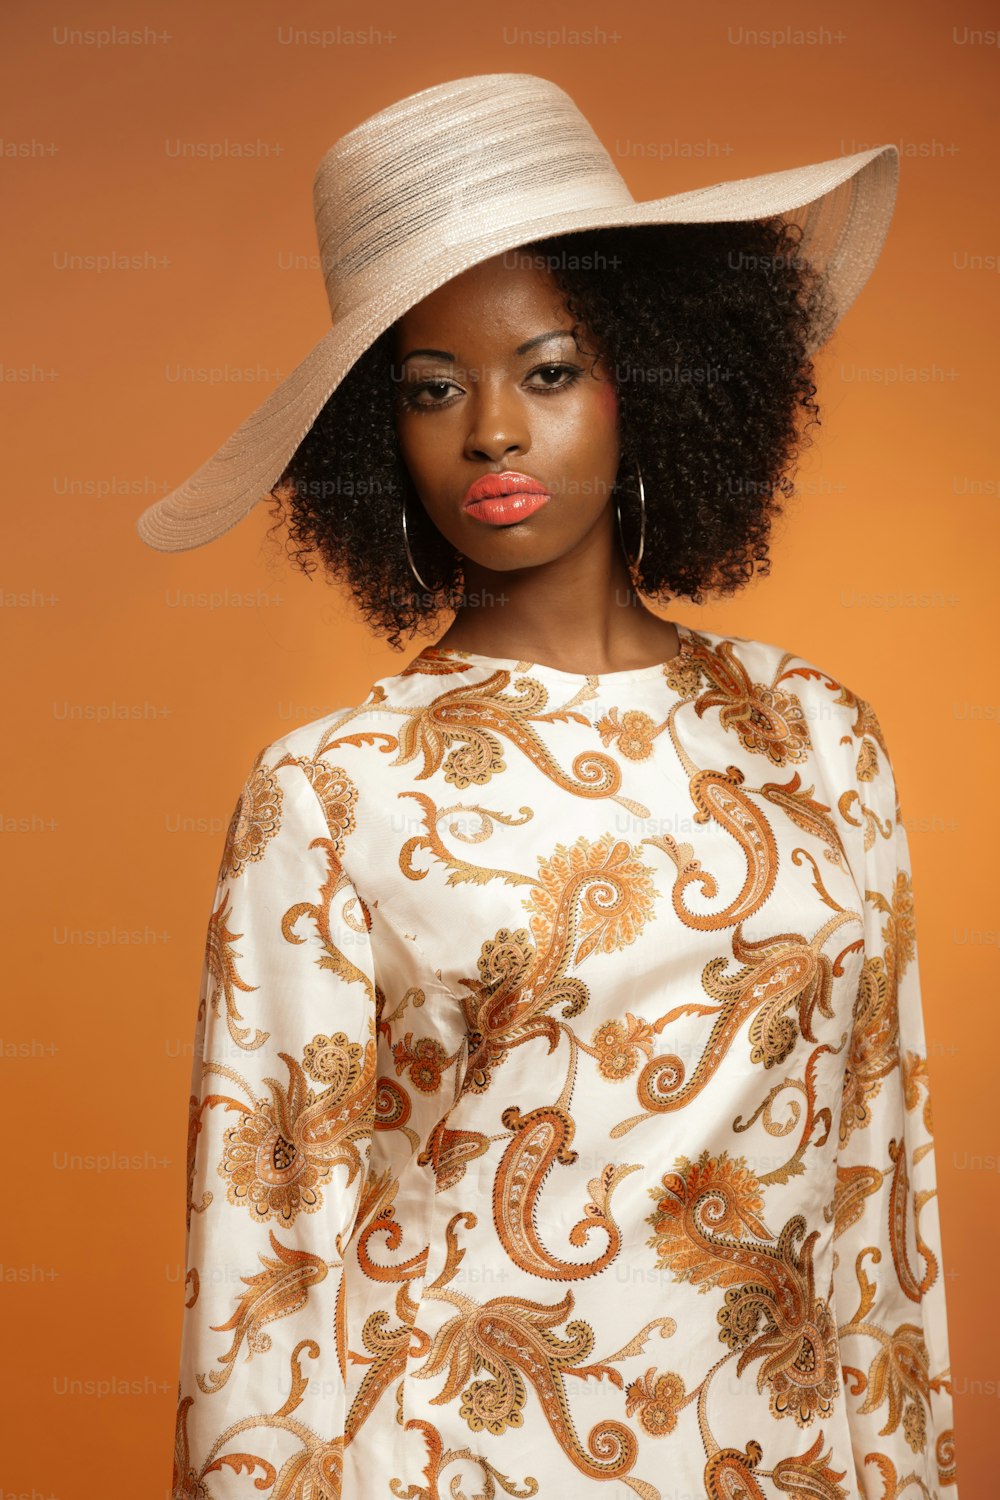 Femme afro mode rétro des années 70 avec robe paisley et chapeau blanc. Fond brun.